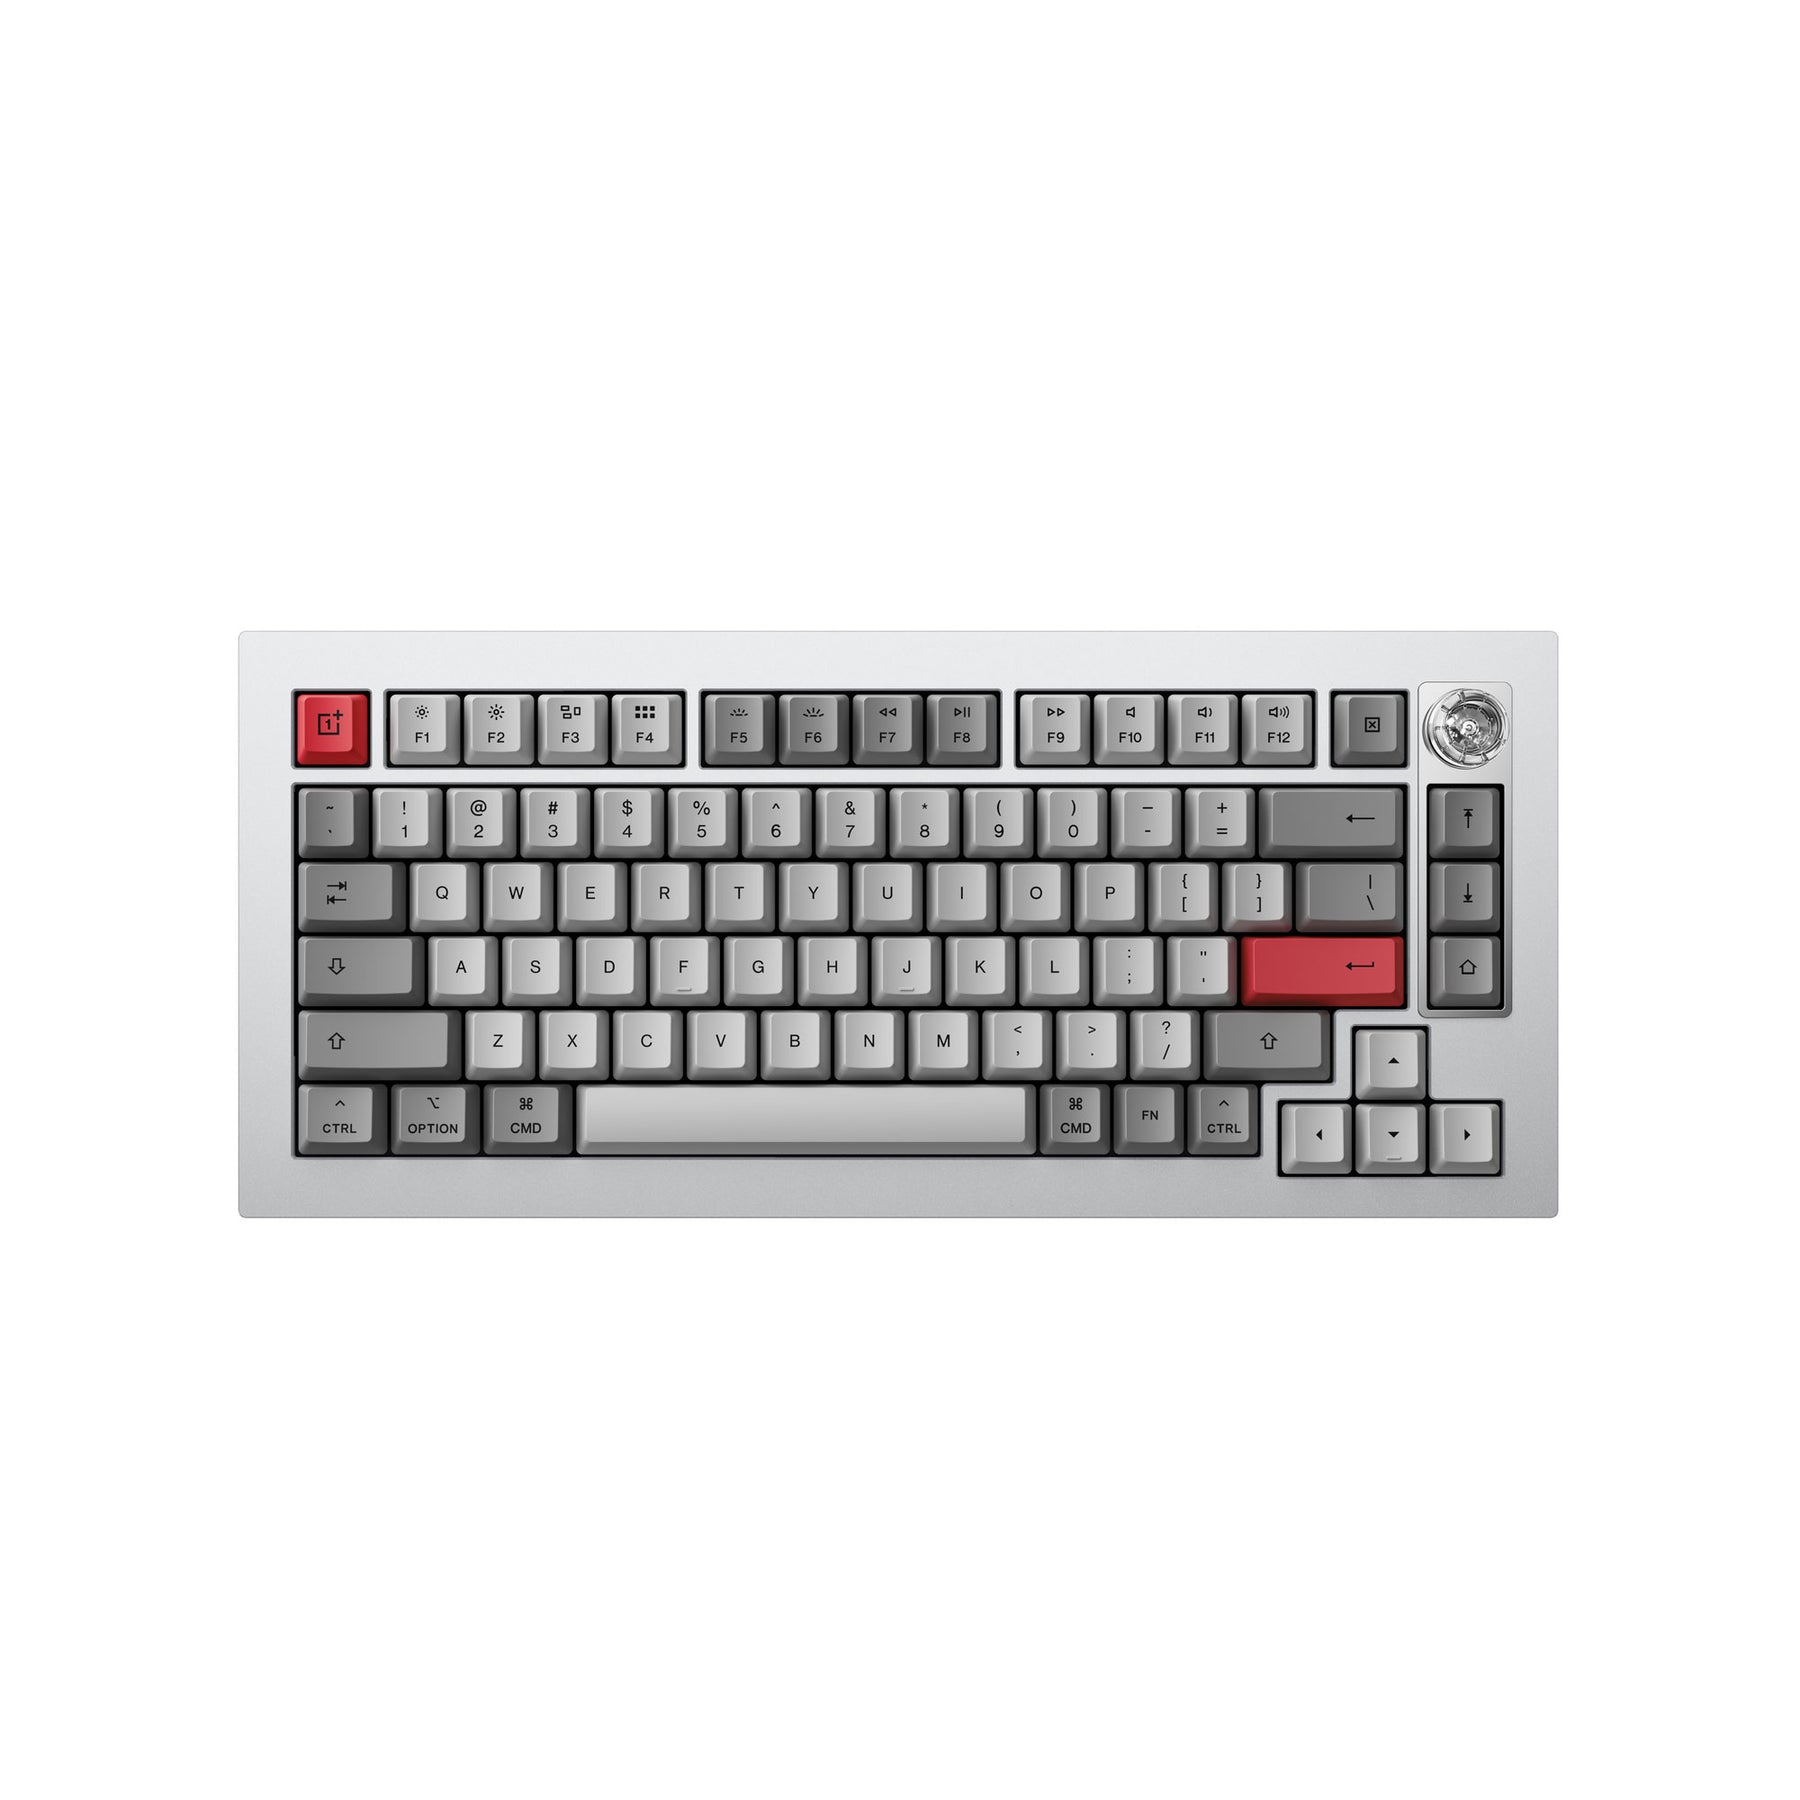 Keyboard 81 Pro QMK/VIA ワイヤレス カスタム メカニカルキーボード（US ANSI 配列）